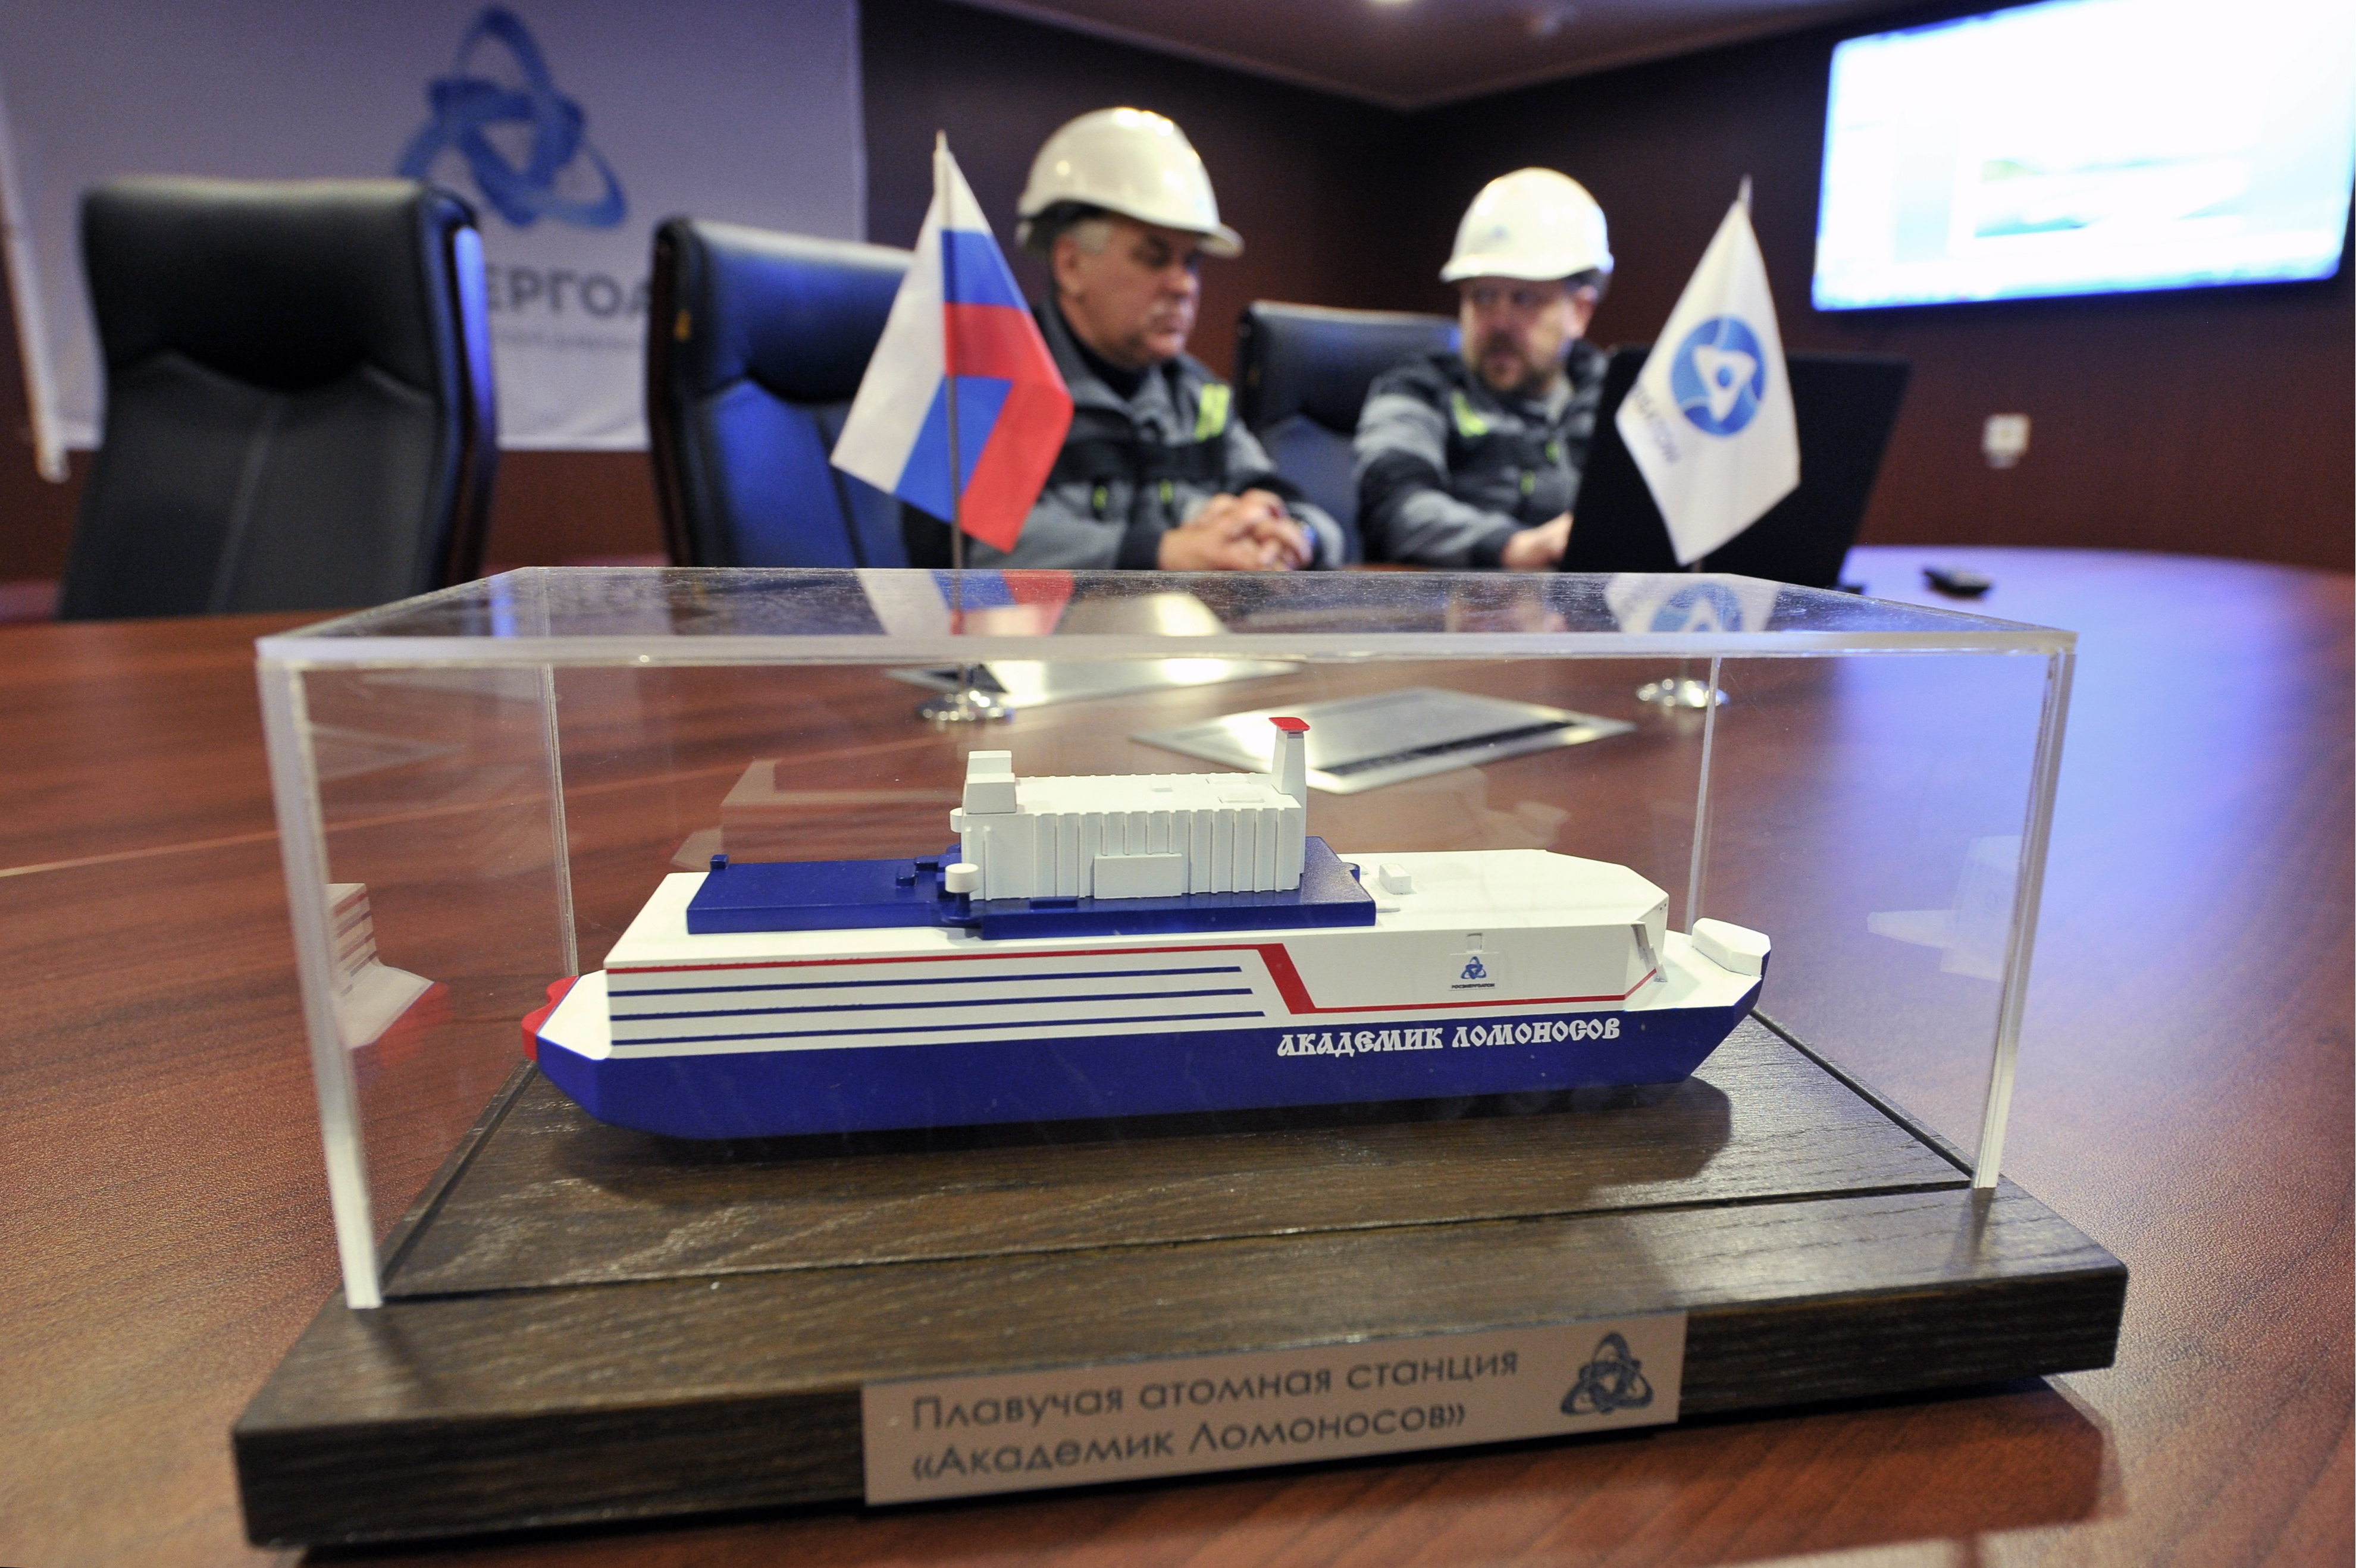 Rusia trimite în larg controversata navă numită ”Cernobîl plutitor”. GALERIE FOTO - Imaginea 7